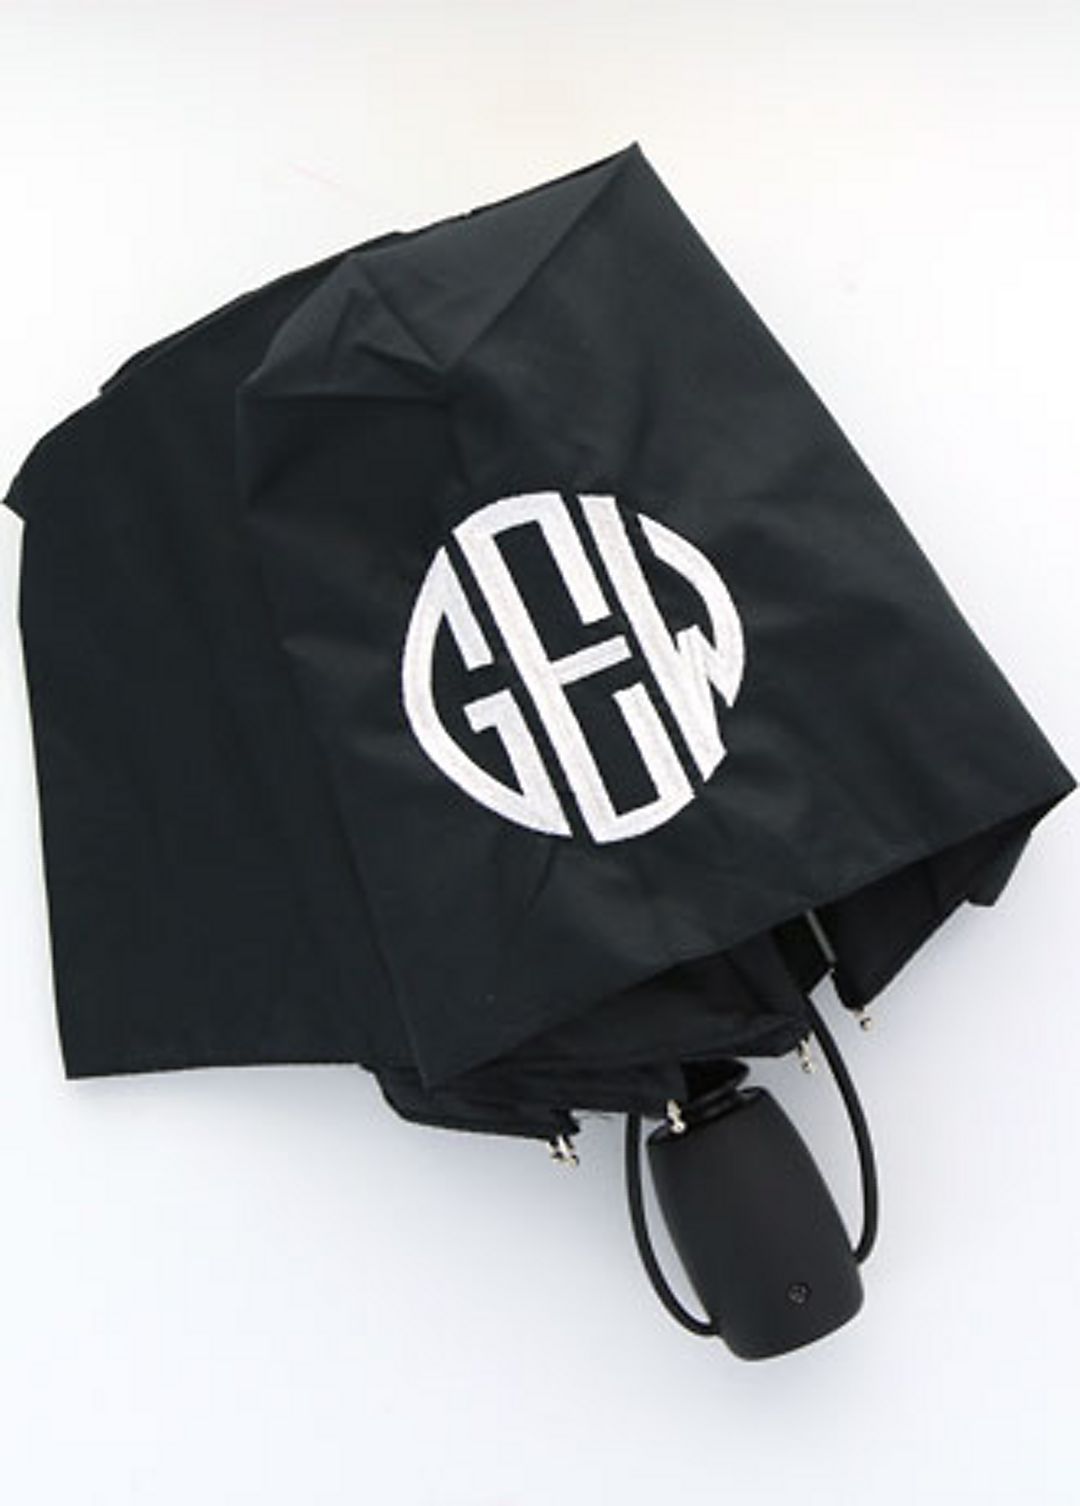 DB Exclusive Personalized Black Auto Open Umbrella Image 2